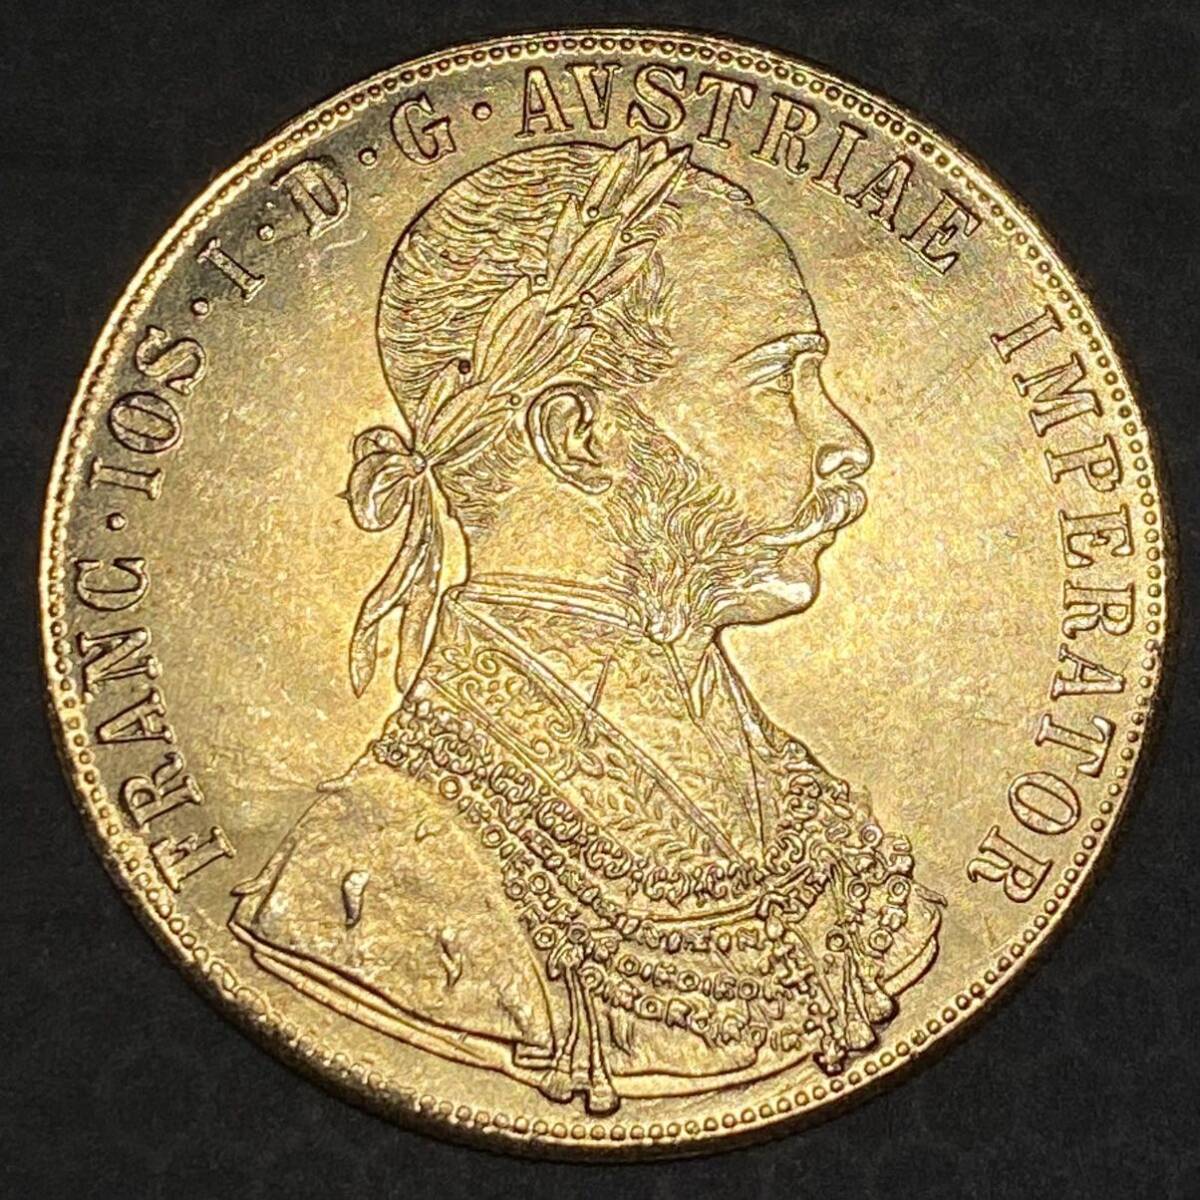 金貨 オーストリア帝国 硬貨 古銭 約14.71g フランツ・ヨーゼフ 1 世 1877年 クラウン 国章 紋章 双頭の鷲 4ダカット コイン 海外硬貨 の画像1